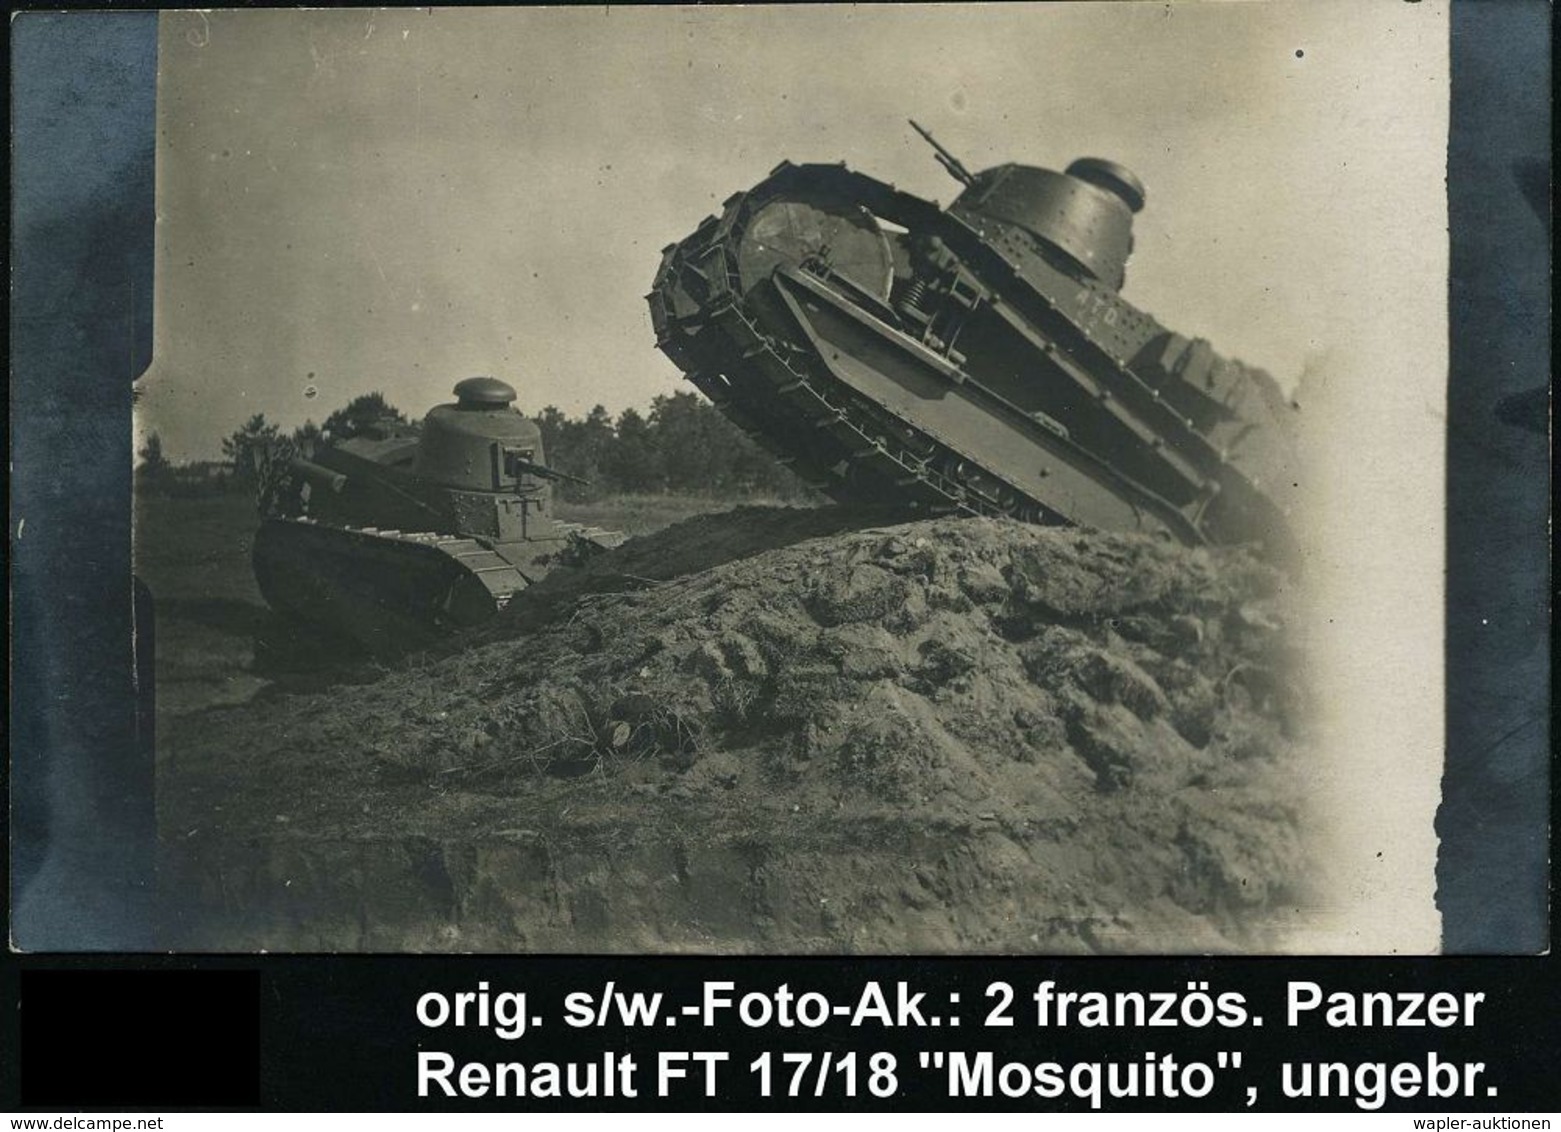 GEPANZERTE KRAFTFAHRZEUGE / PANZER : FRANKREICH 1917 S/w.-Foto-Ak: 2 Französ. Panzer Renault "Mosquito FT 17/18" Bei Der - Other (Earth)